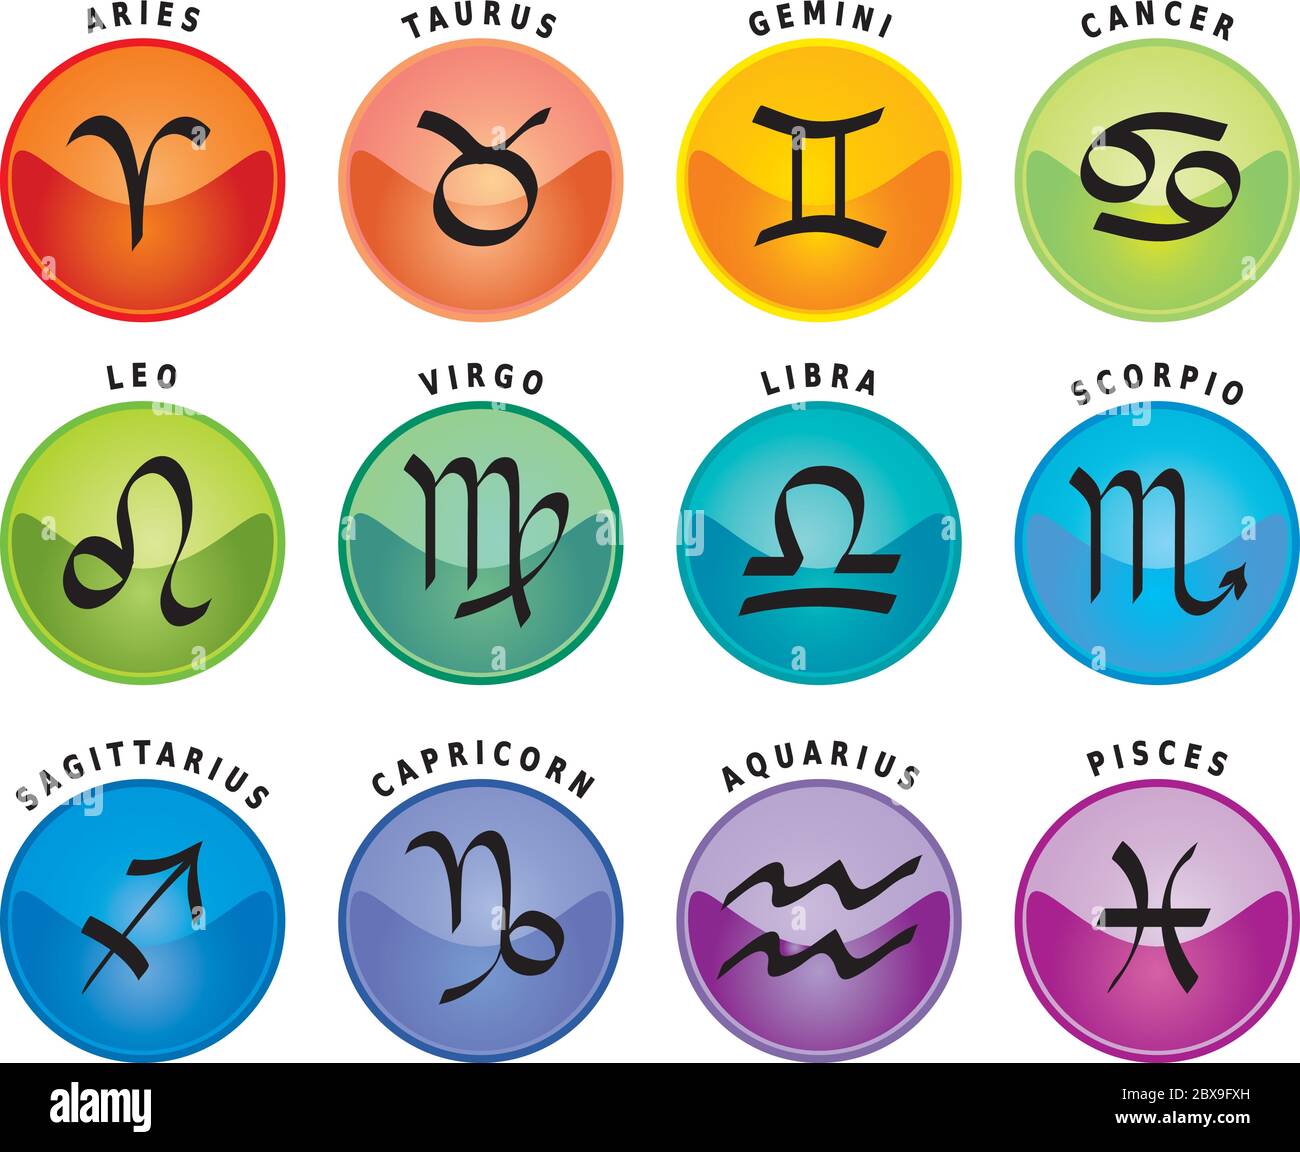 Segni zodiacali, dodici icone astrologiche con nomi in inglese Illustrazione Vettoriale